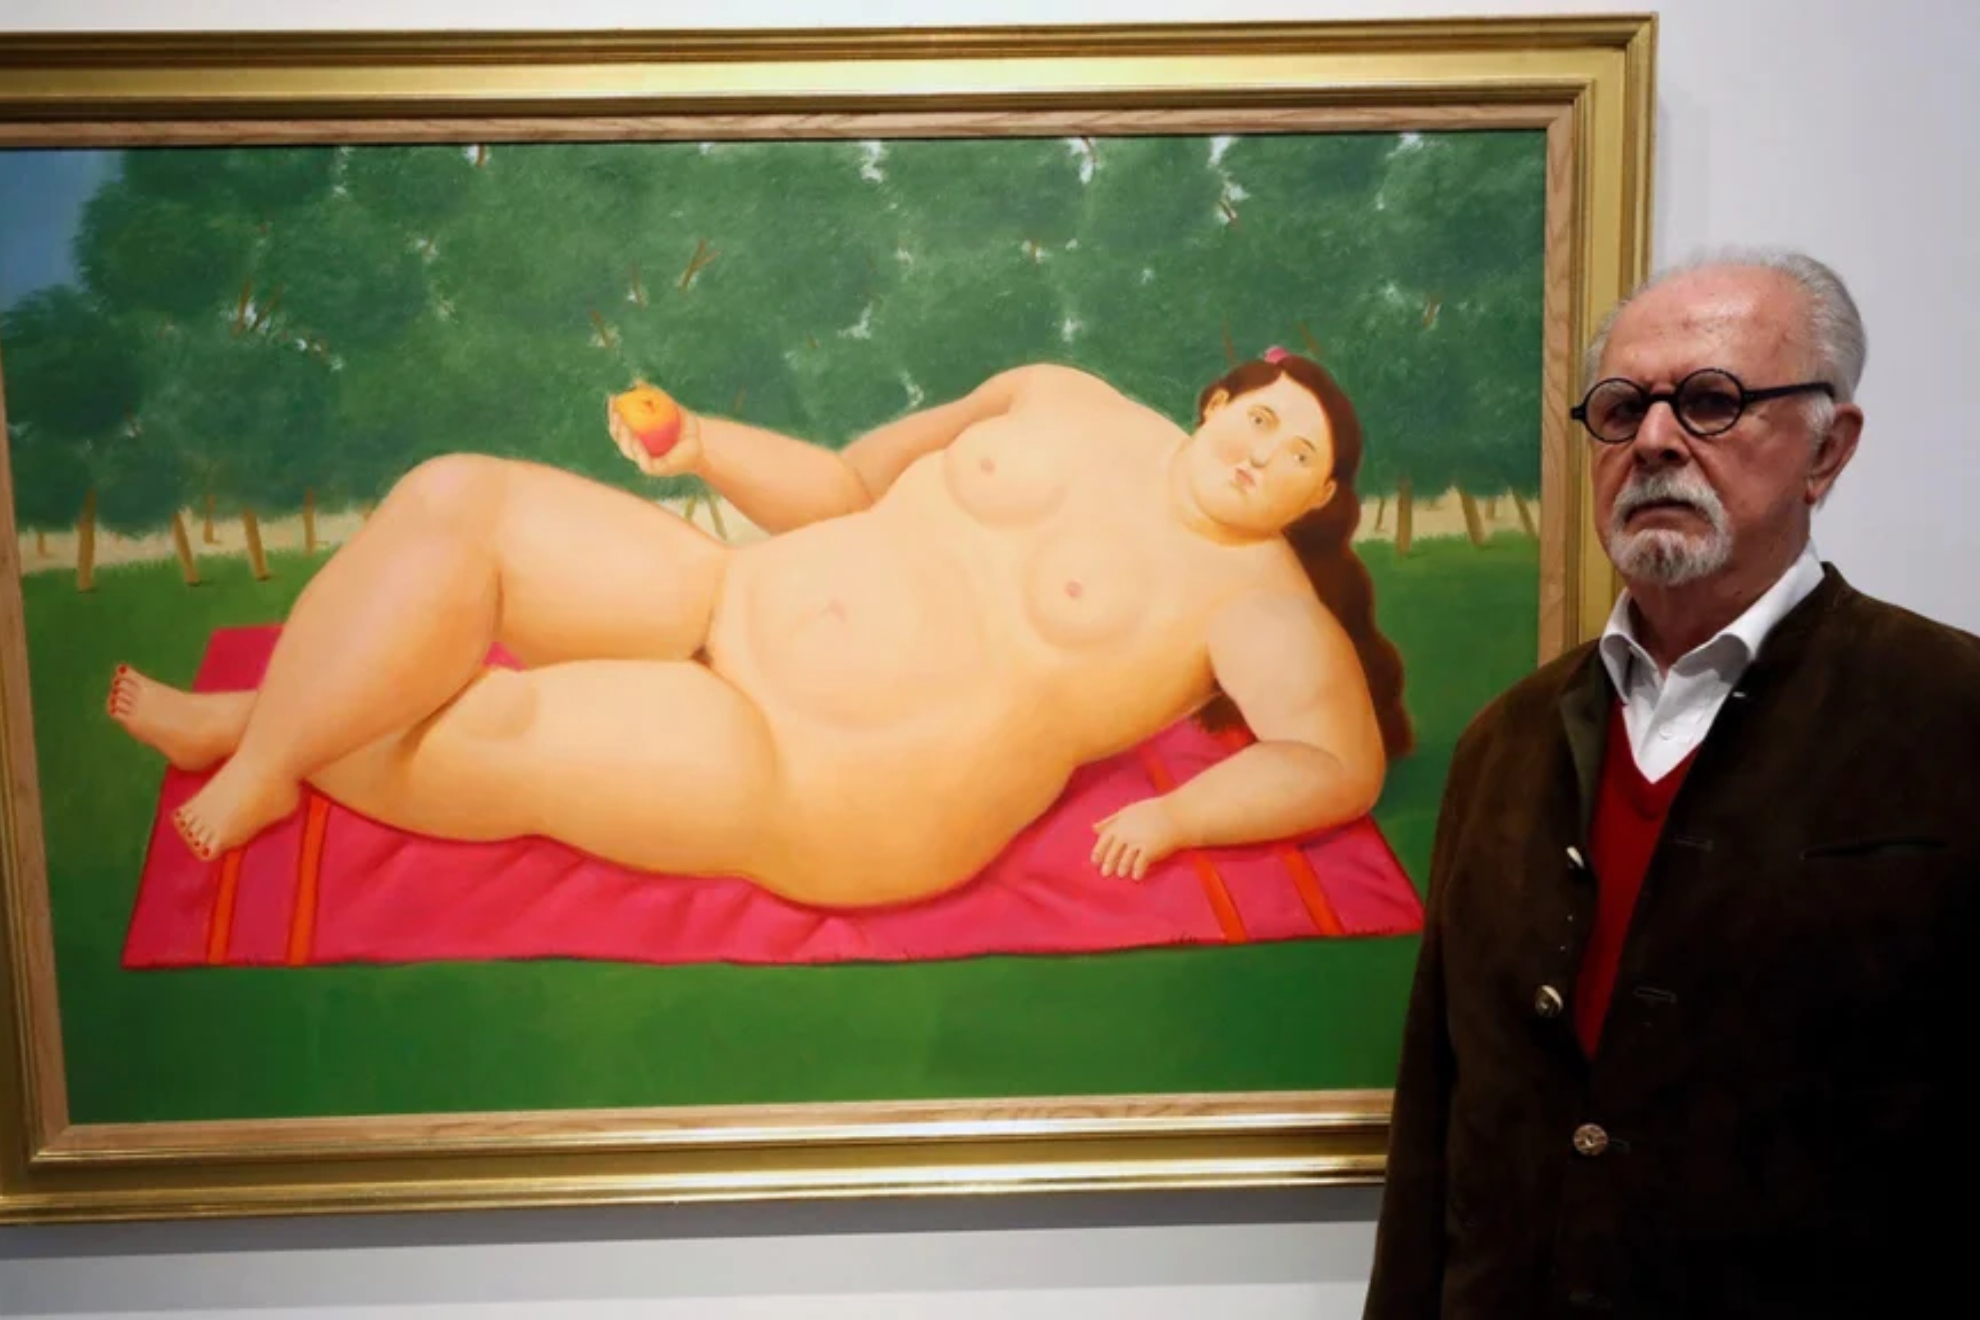 Fernando Botero.